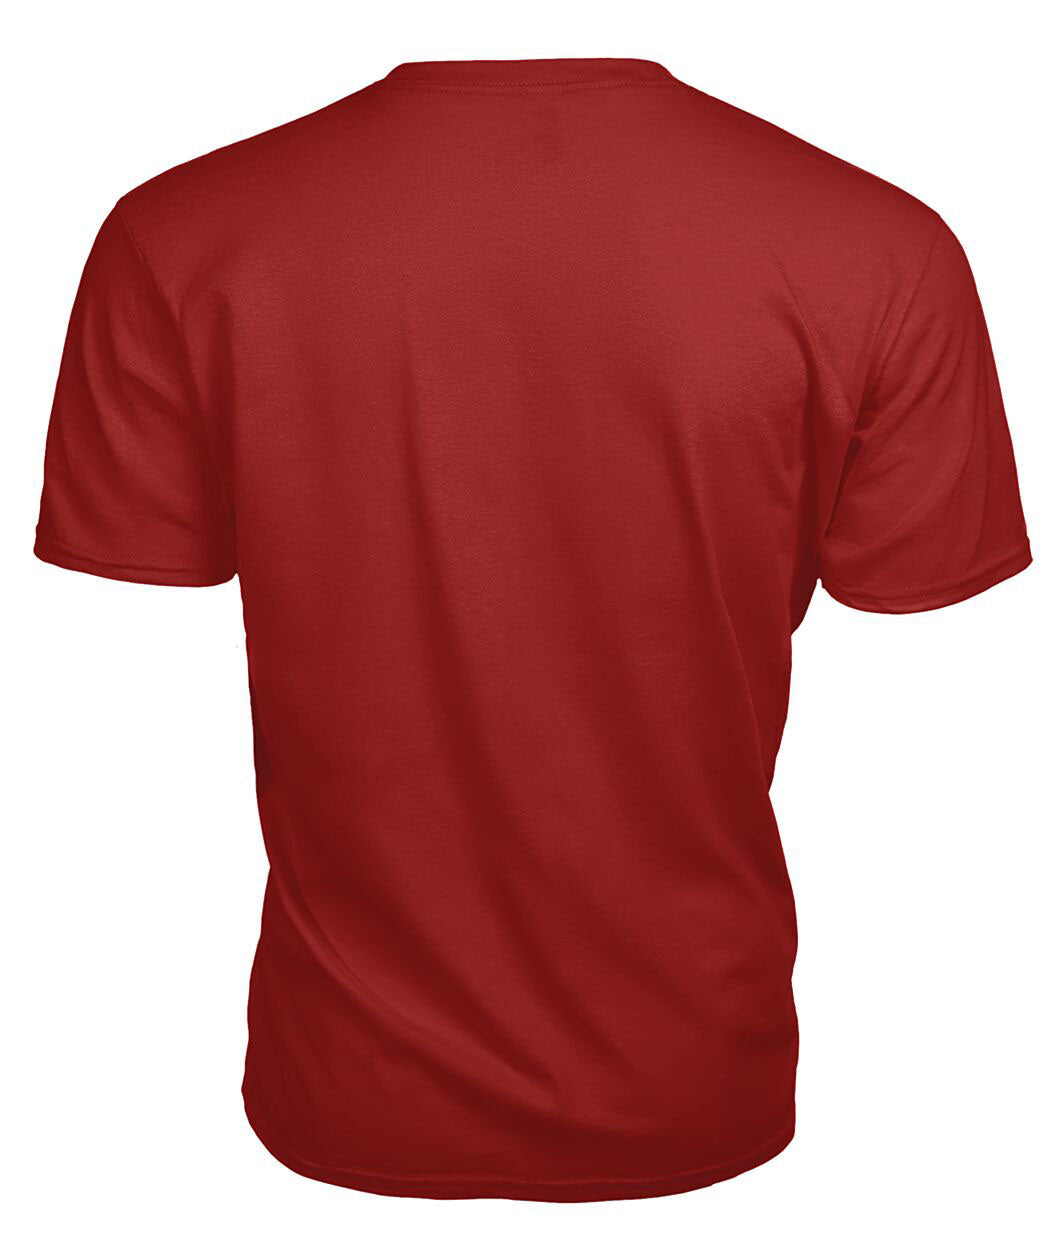 Scott Green Weathered Tartan Crest 2D T-shirt - Blood Runs Through My Veins Style